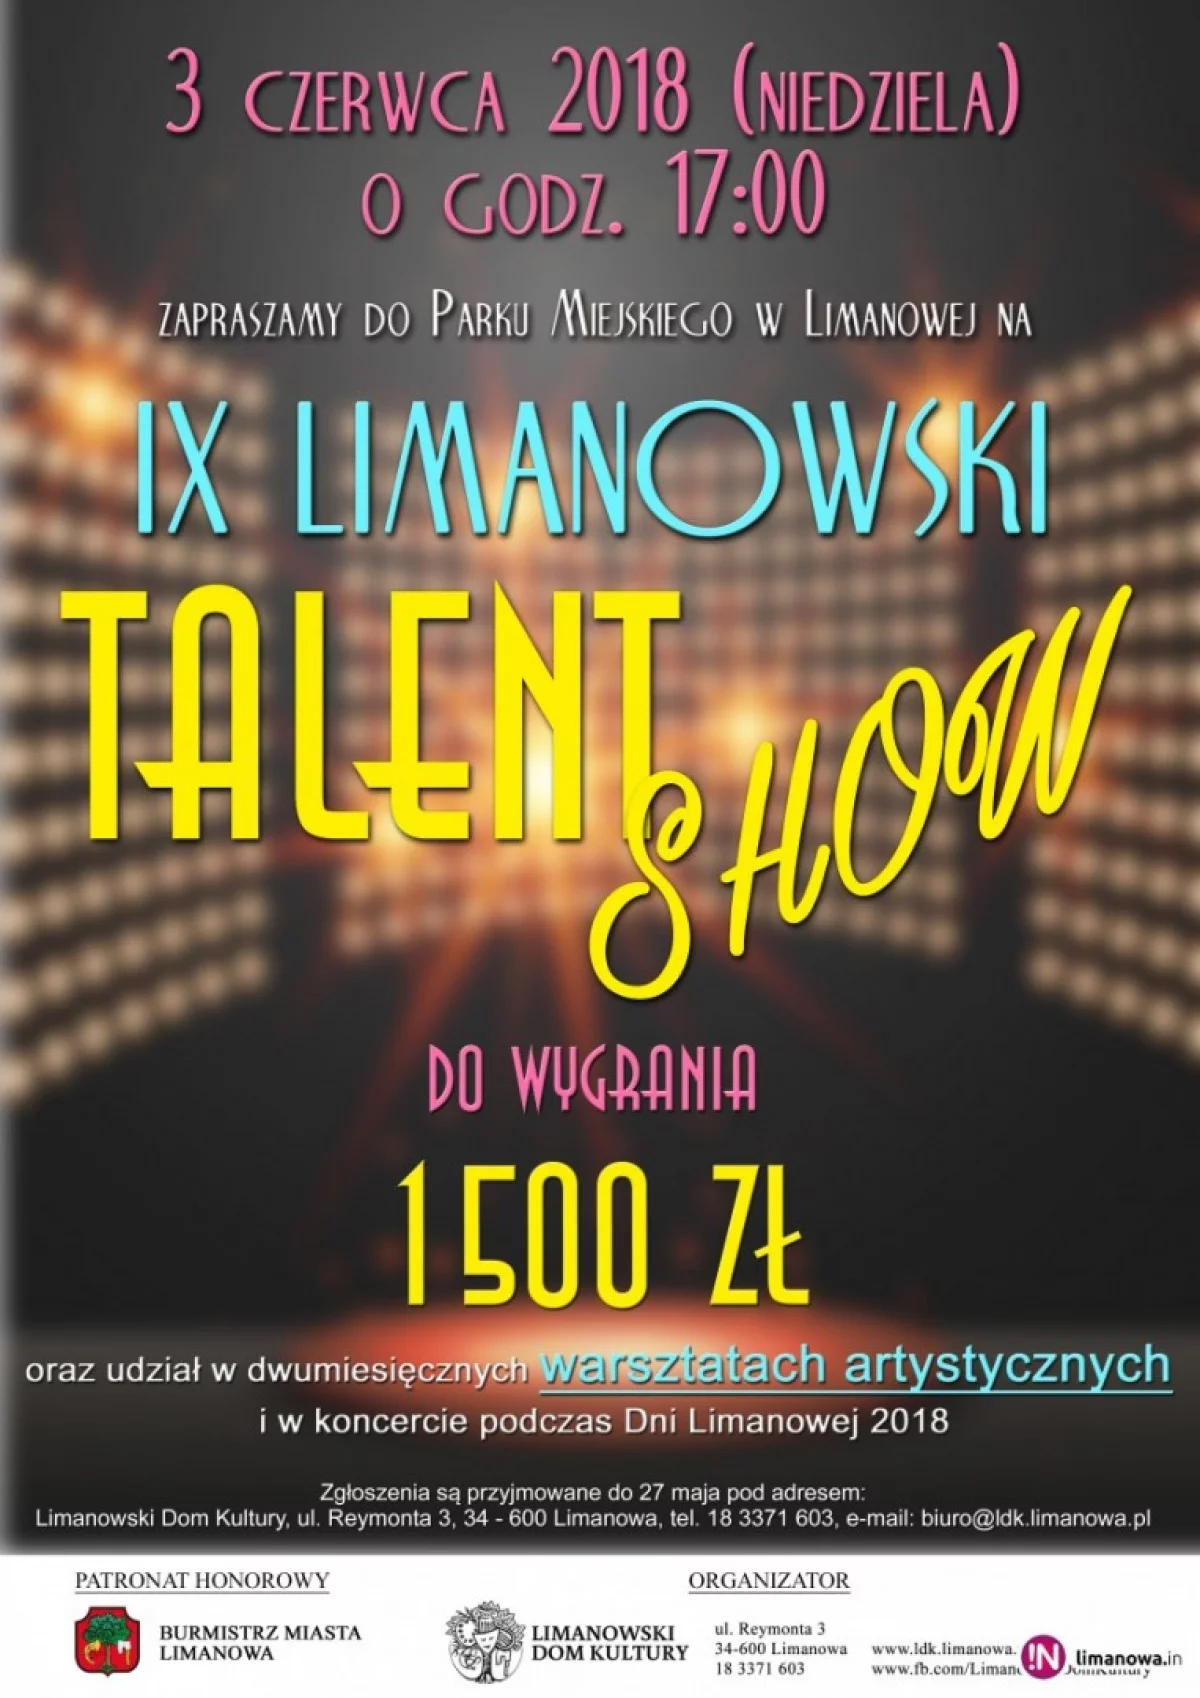 IX Limanowski Talent Show – zgłoś się!